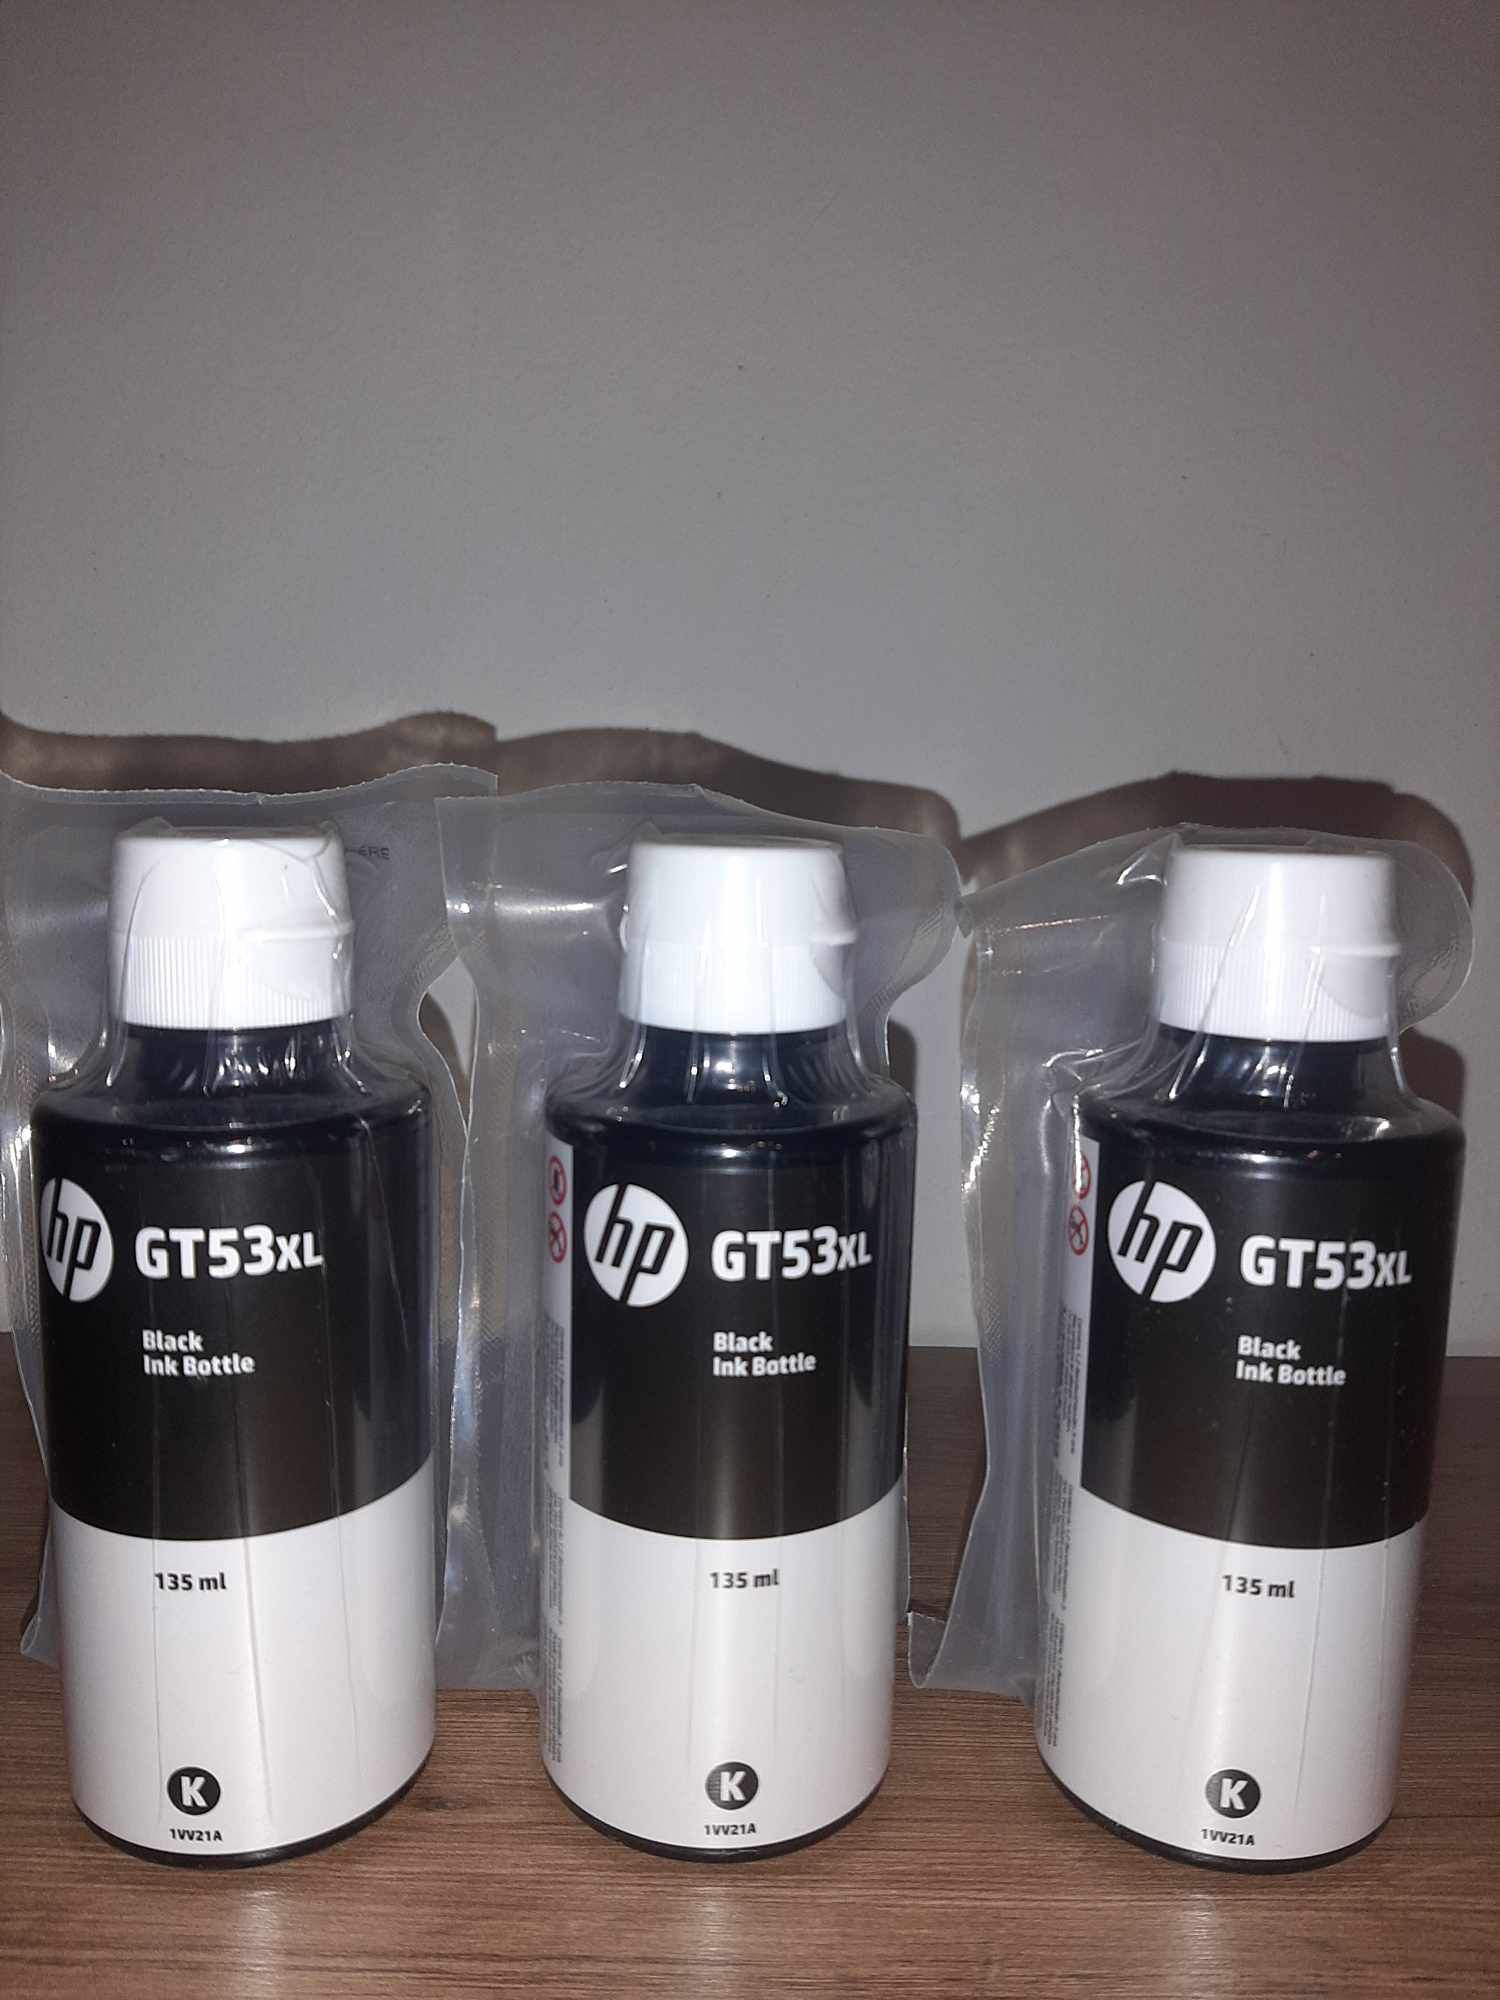 3 Tusze do drukarki HP oznaczenie GT53xl